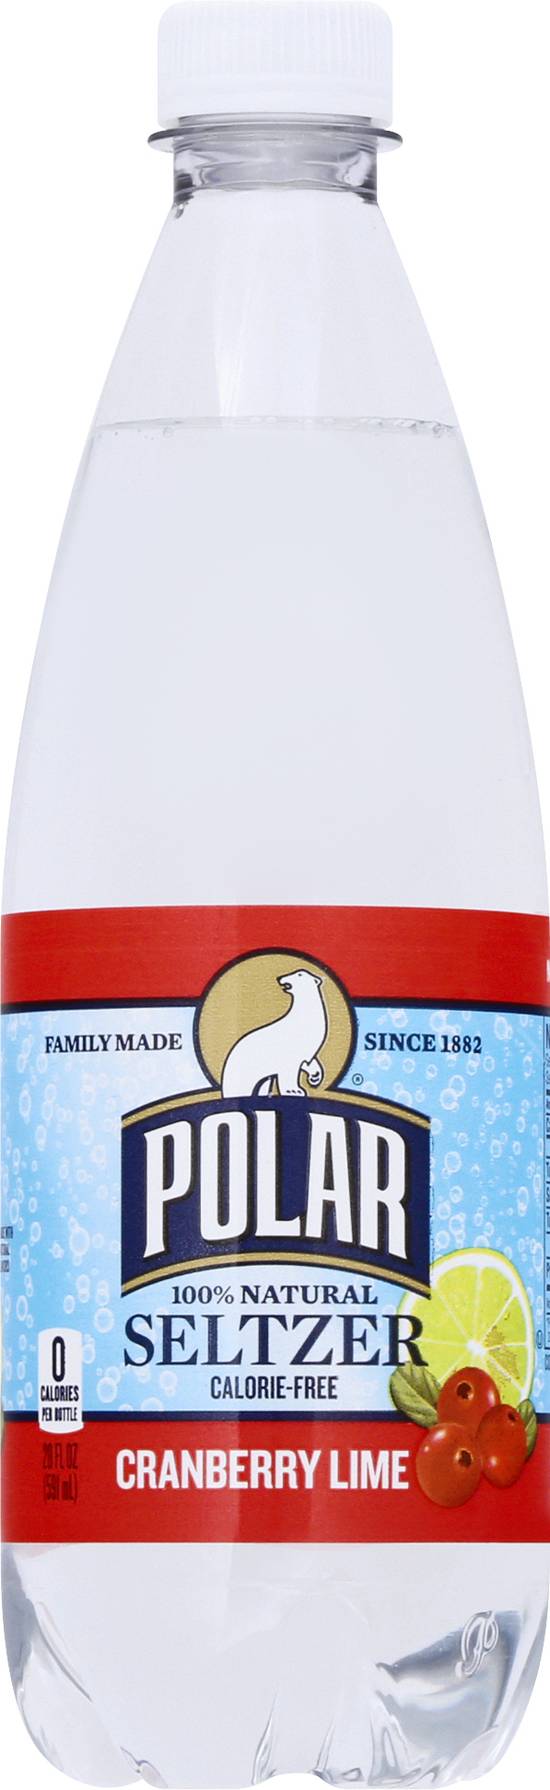 Polar Natural Seltzer (20 fl oz) (cranberry lime)